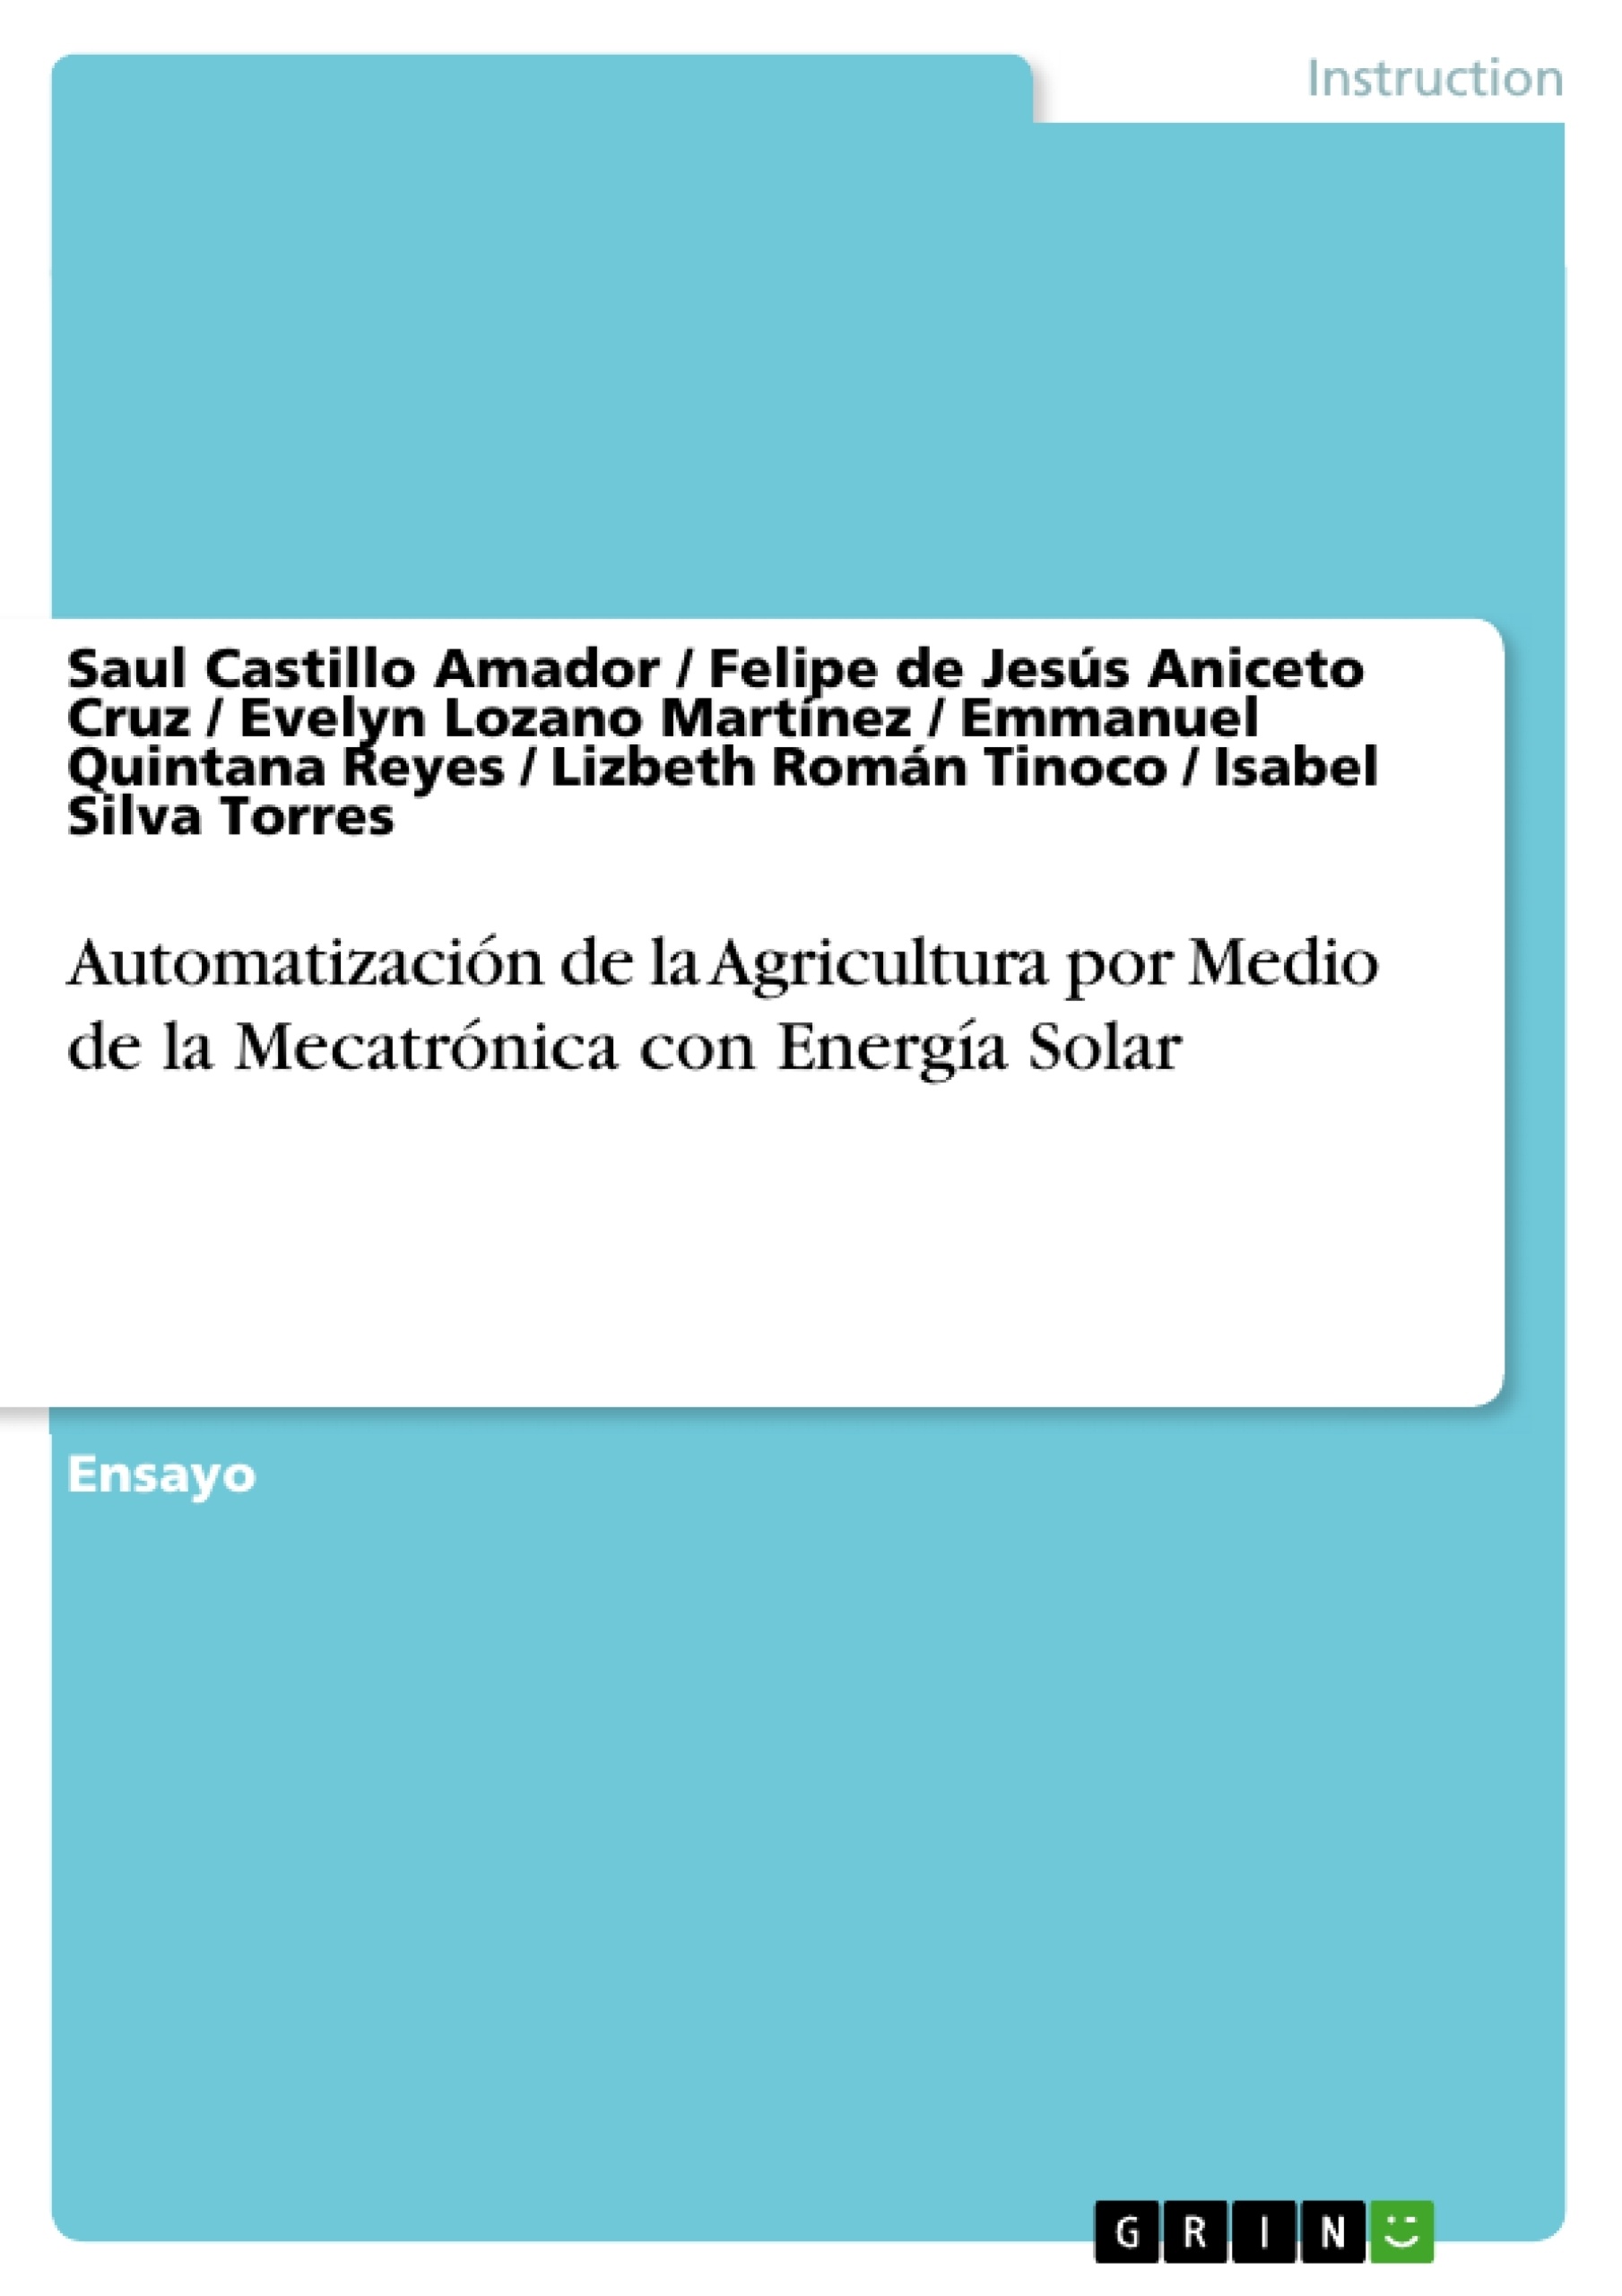 Titre: Automatización de la Agricultura por Medio de la Mecatrónica con Energía Solar